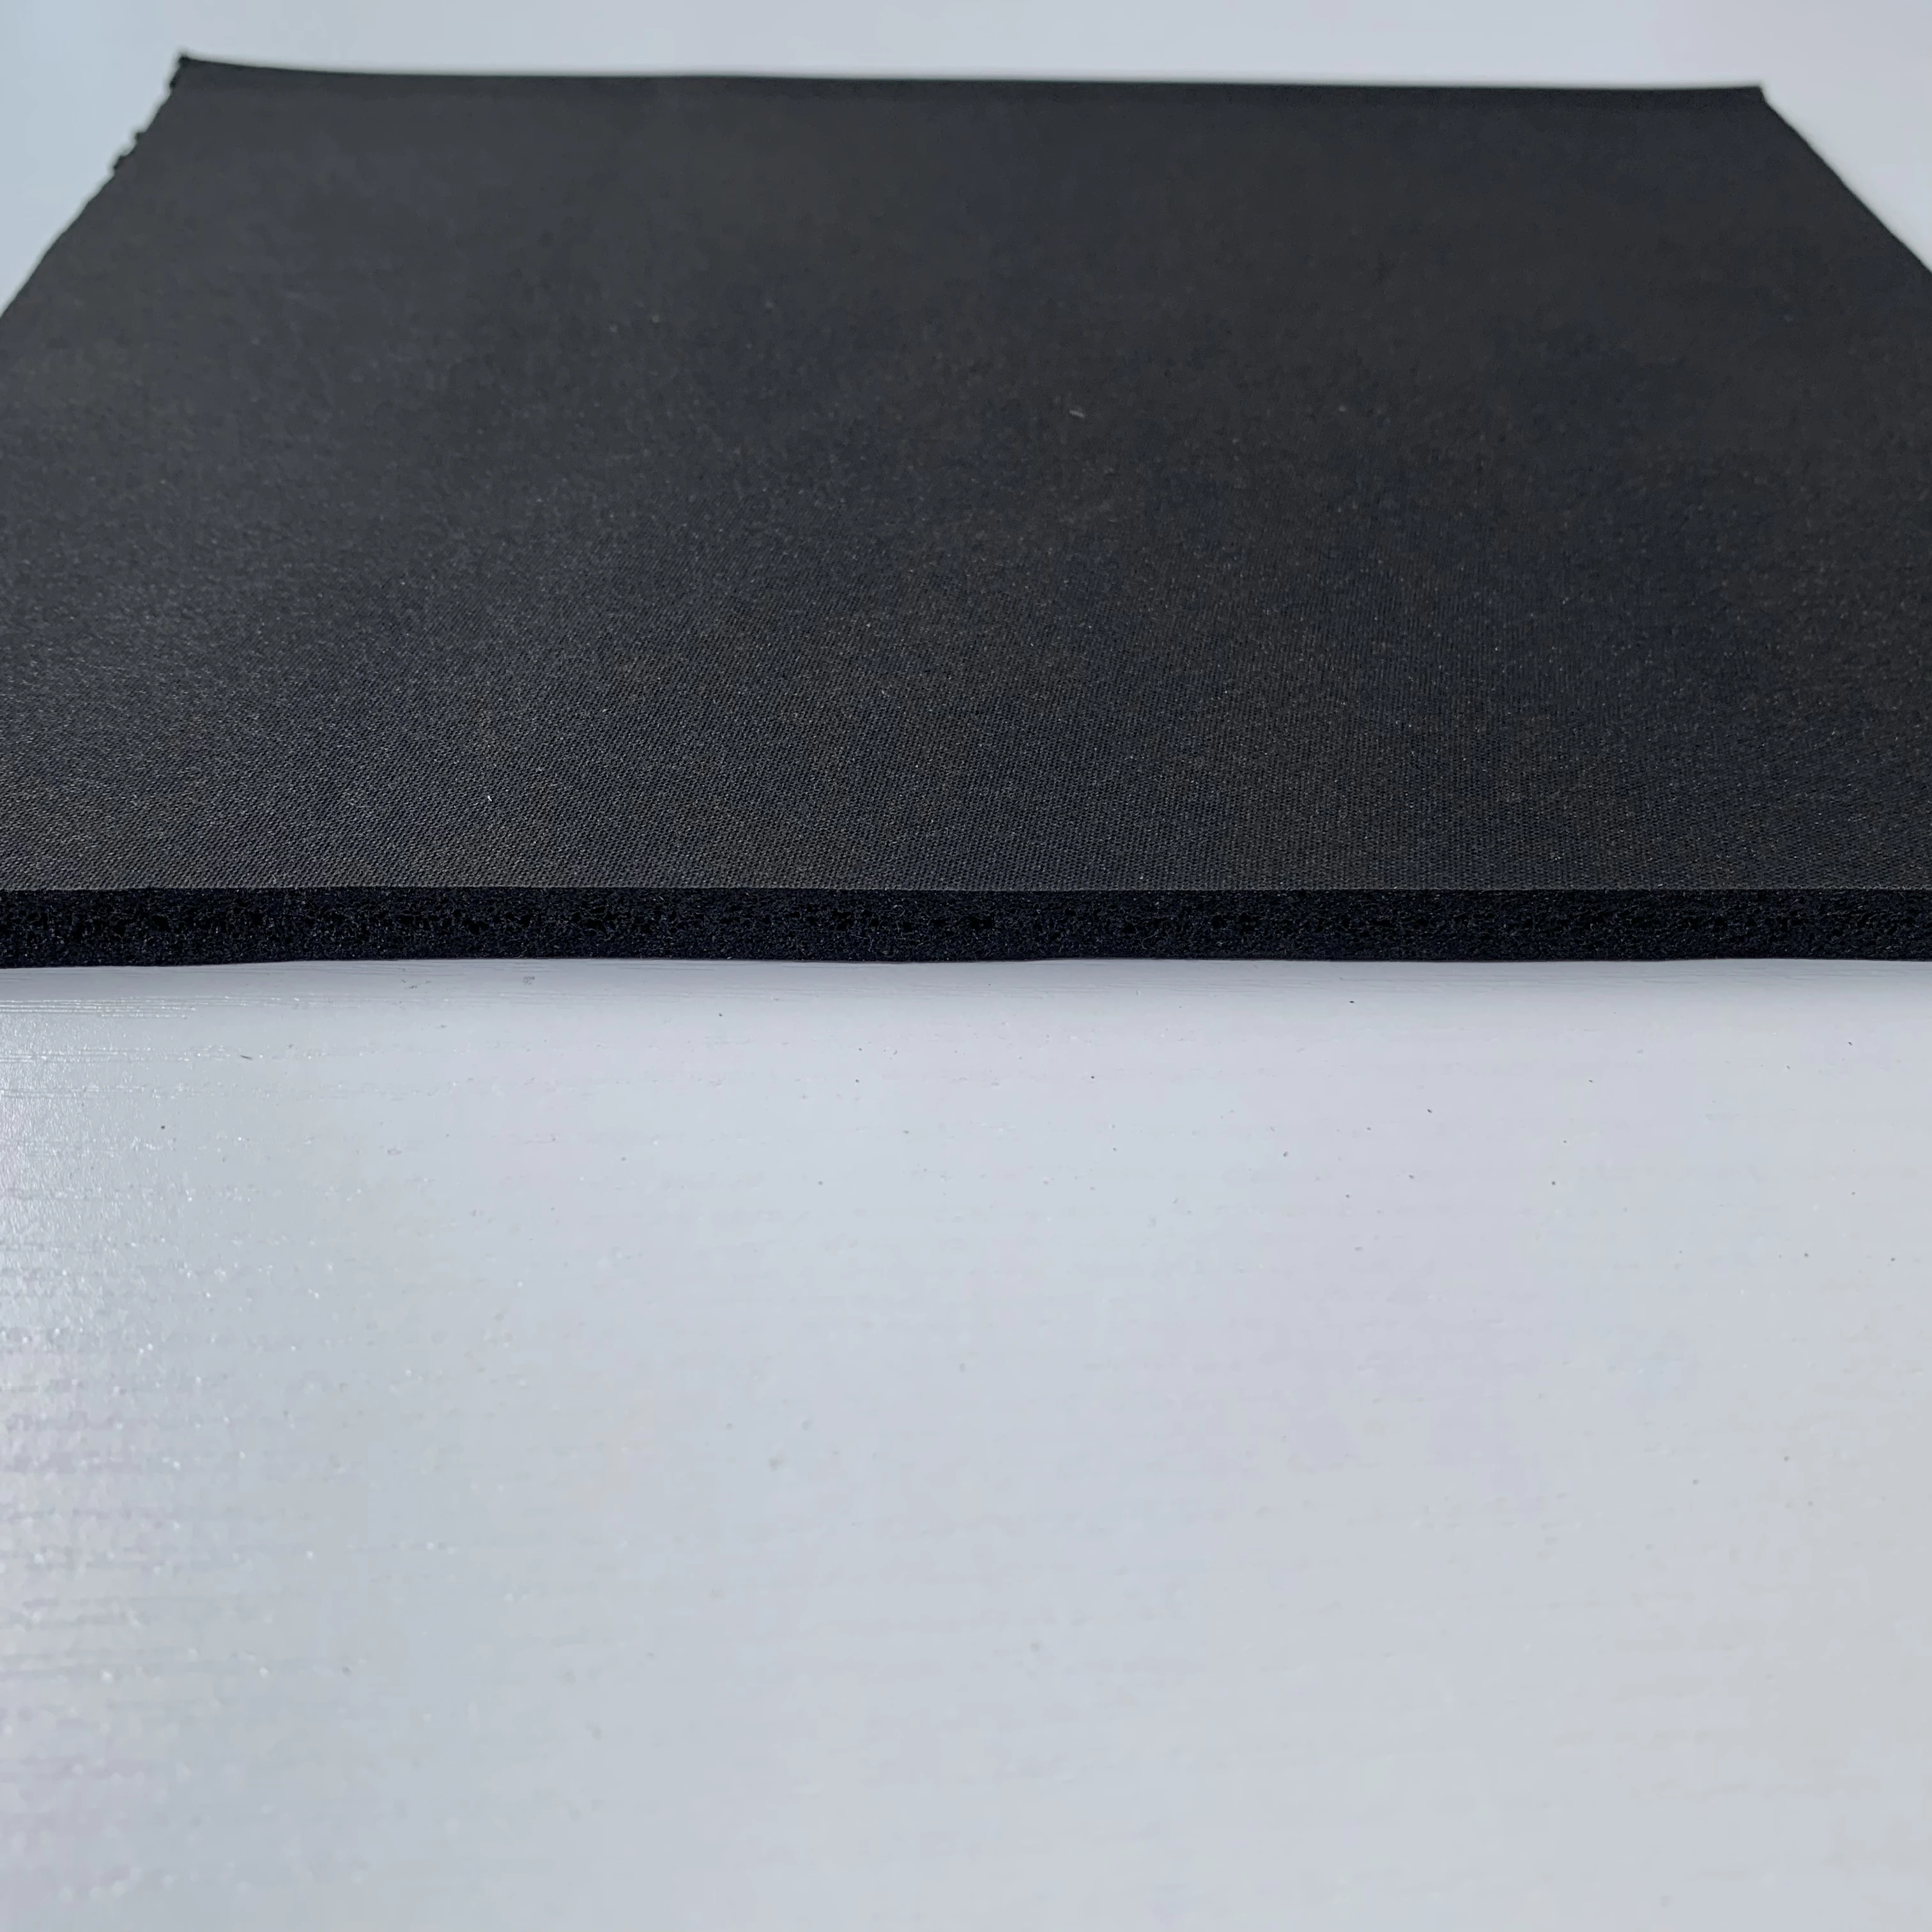  Производство Xiamen Изготовление по индивидуальному заказу неопреновый Fkm пена Nbr силиконовый резиновый лист 43 любой тип и размер нестандартный лучшее уплотнение